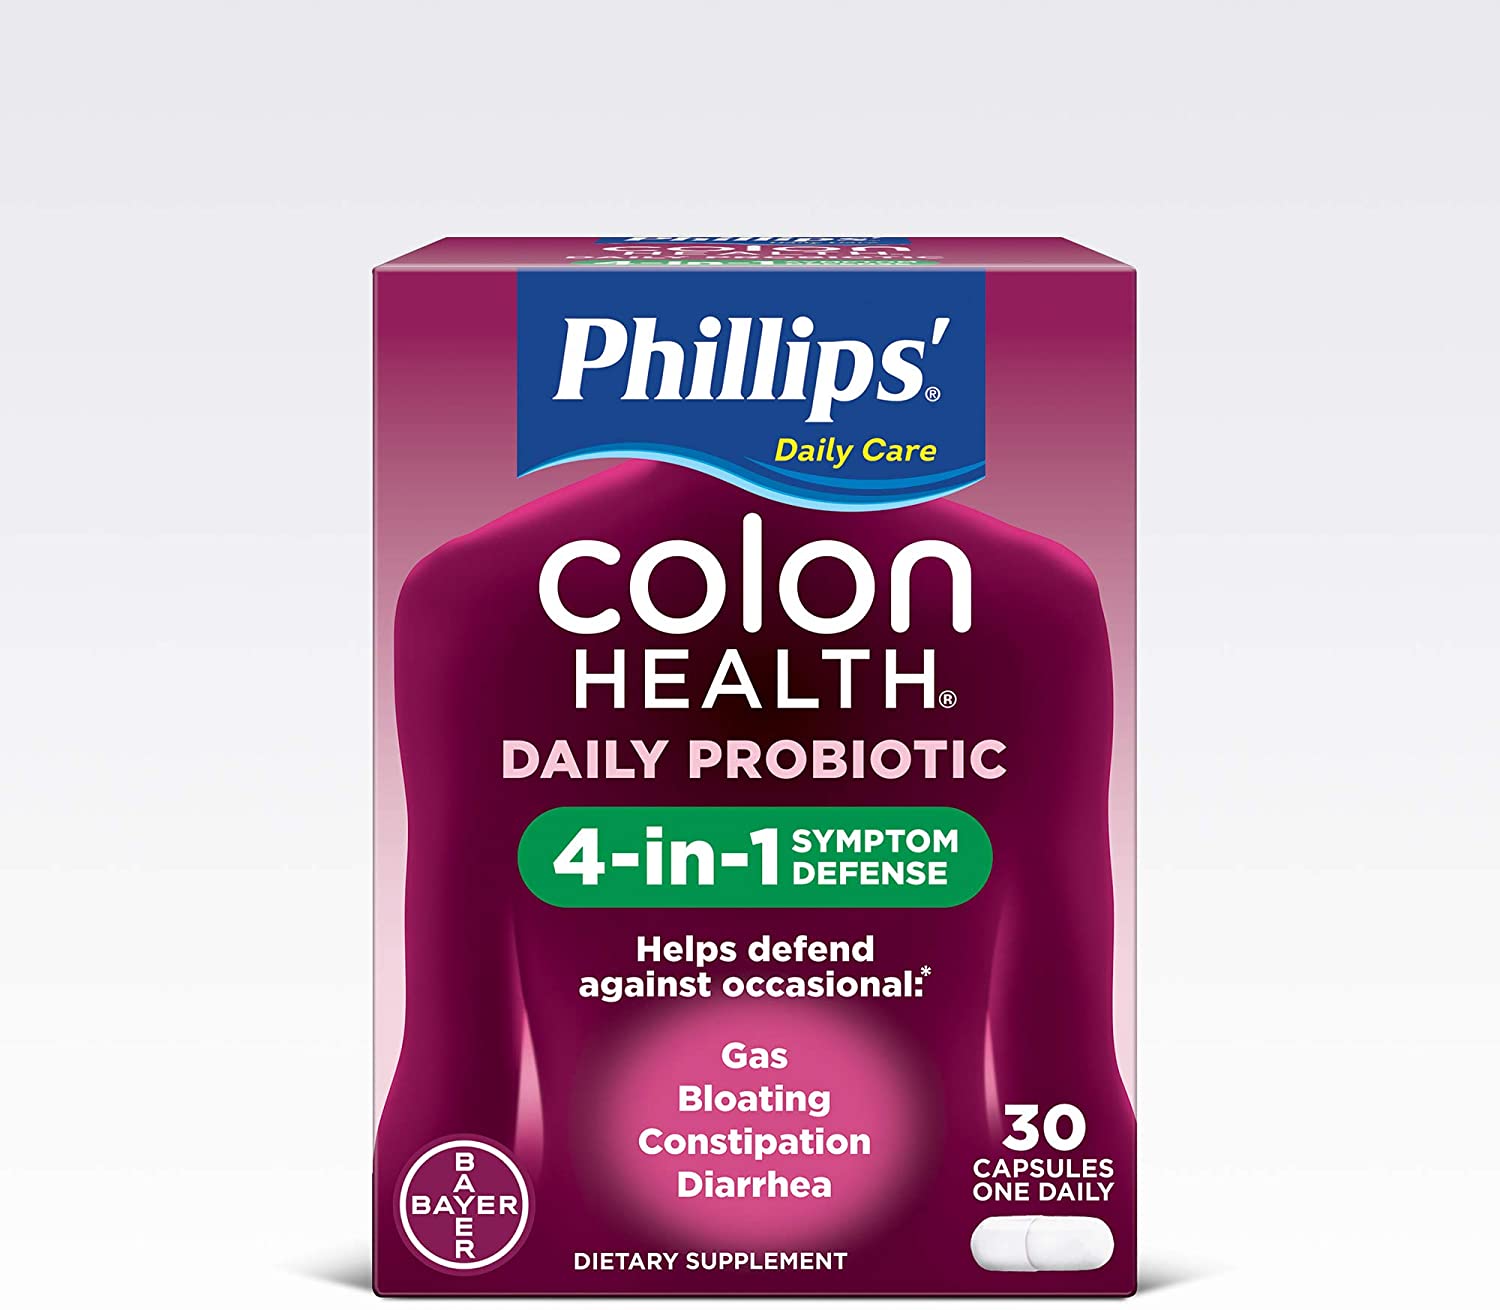 Phillips’ Colon Health Probiotic Review